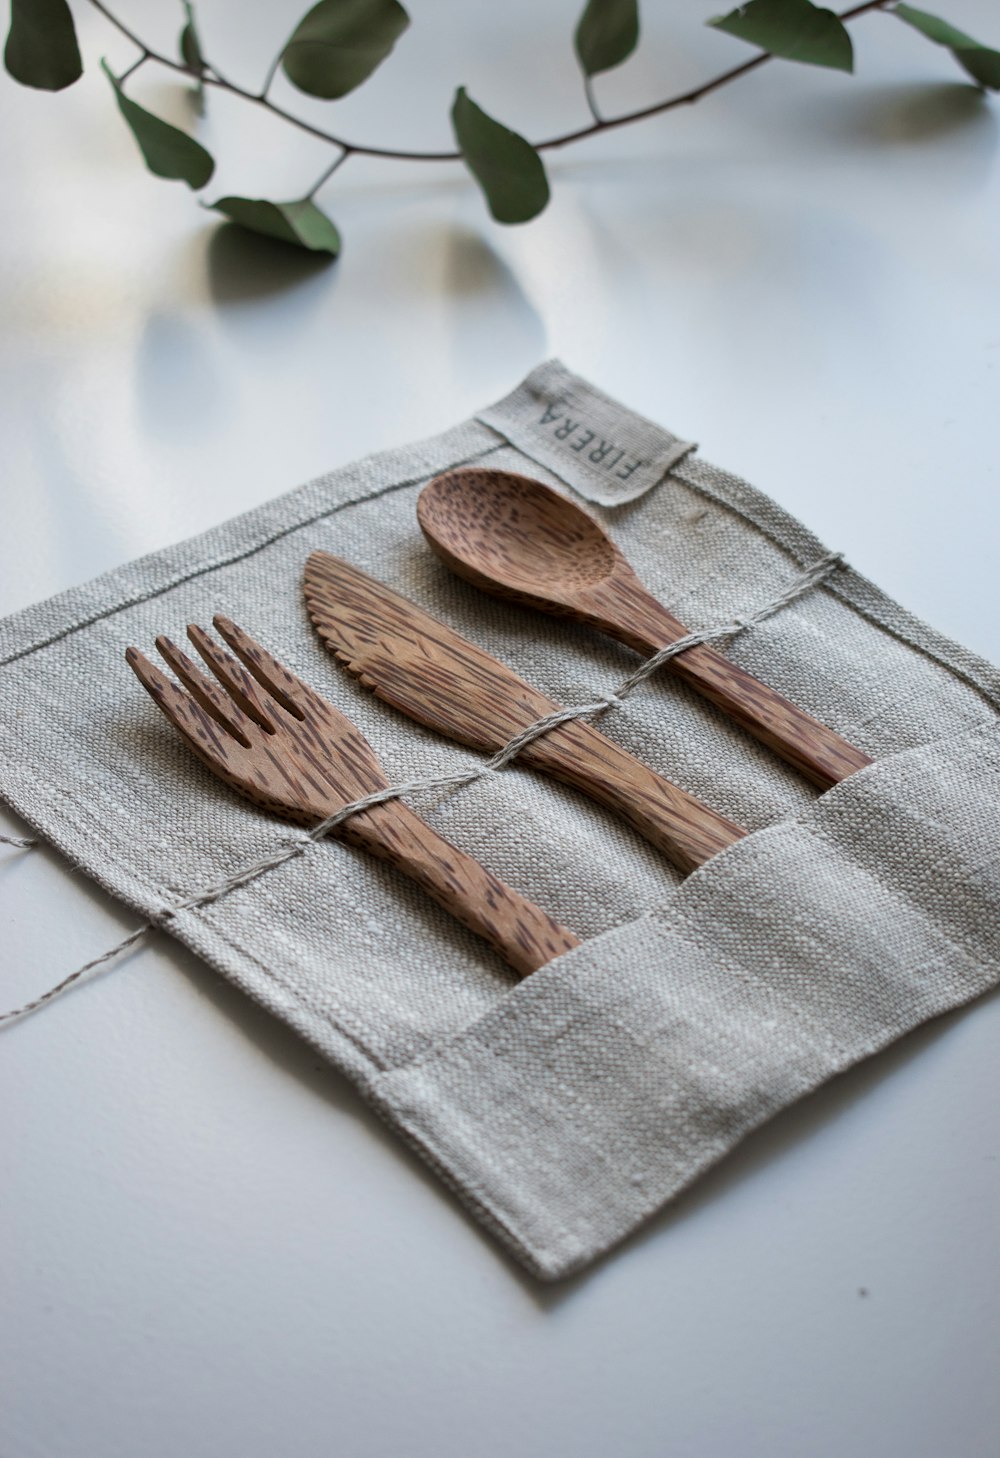 Forchetta, cucchiaio e coltello in legno marrone su tessuto